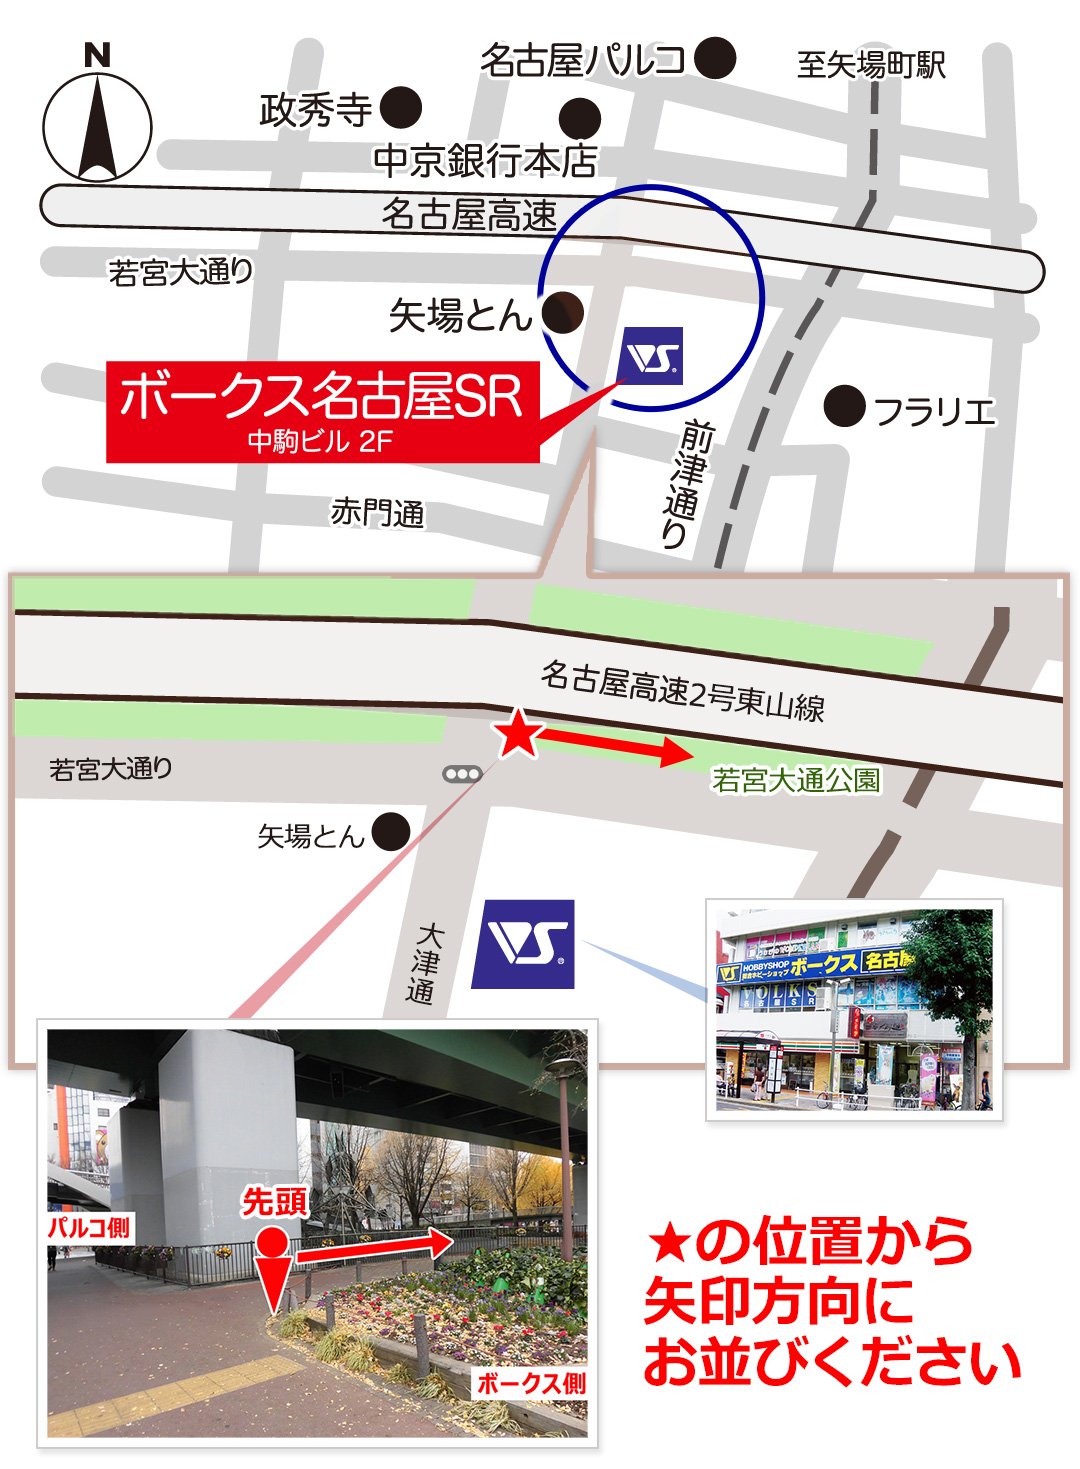 map_nagoya_01.jpg